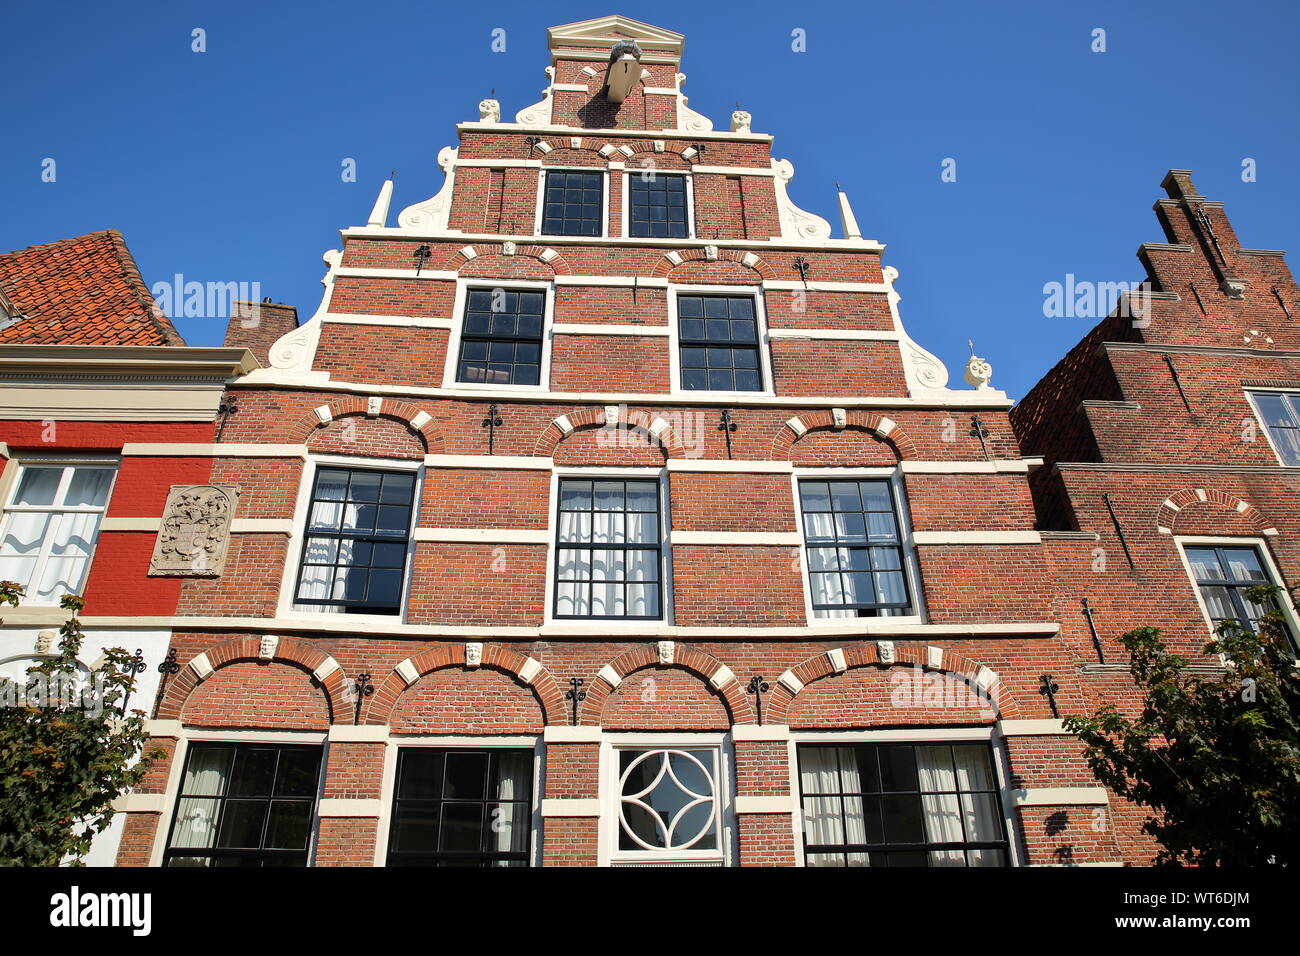 La facciata esterna di case storiche con intagli, situato sulla strada Cattenhage dentro la città fortificata di Naarden, Paesi Bassi Foto Stock